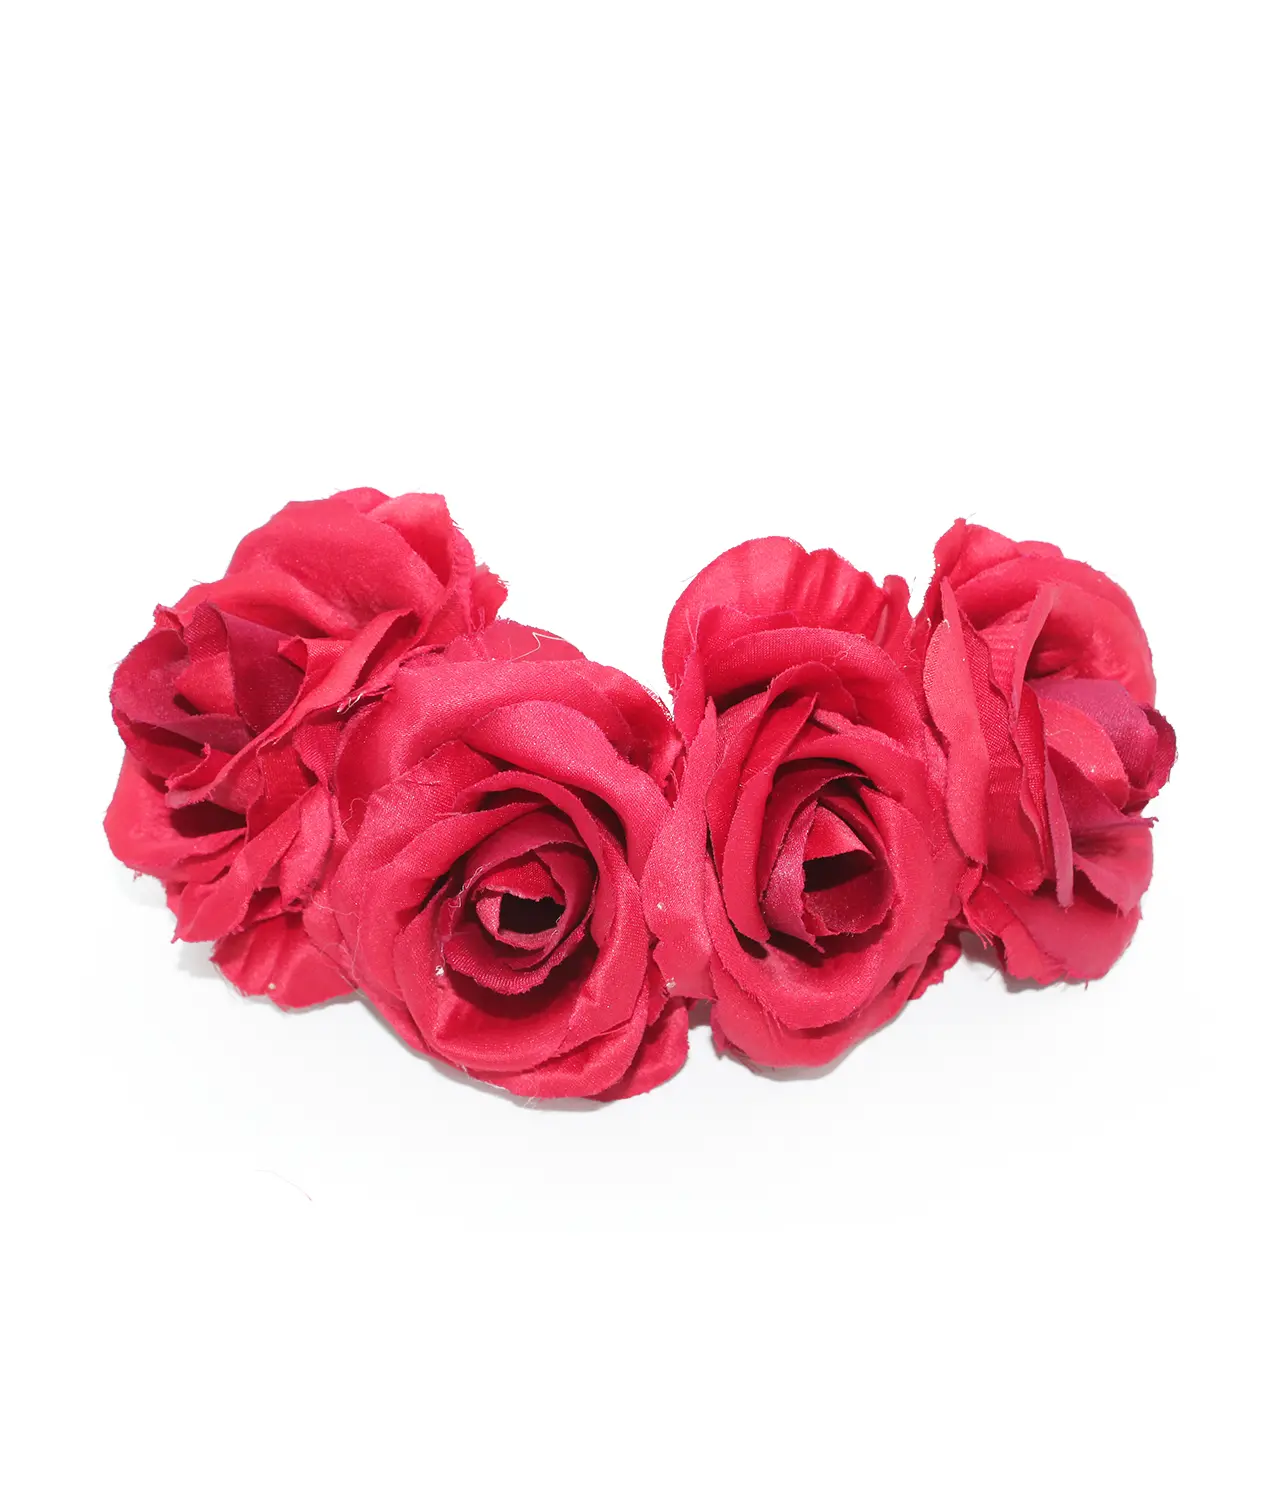 Corona de 4 rosas para vestirse de flamenca en color rojo. El complemento de flamenca que necesitas.